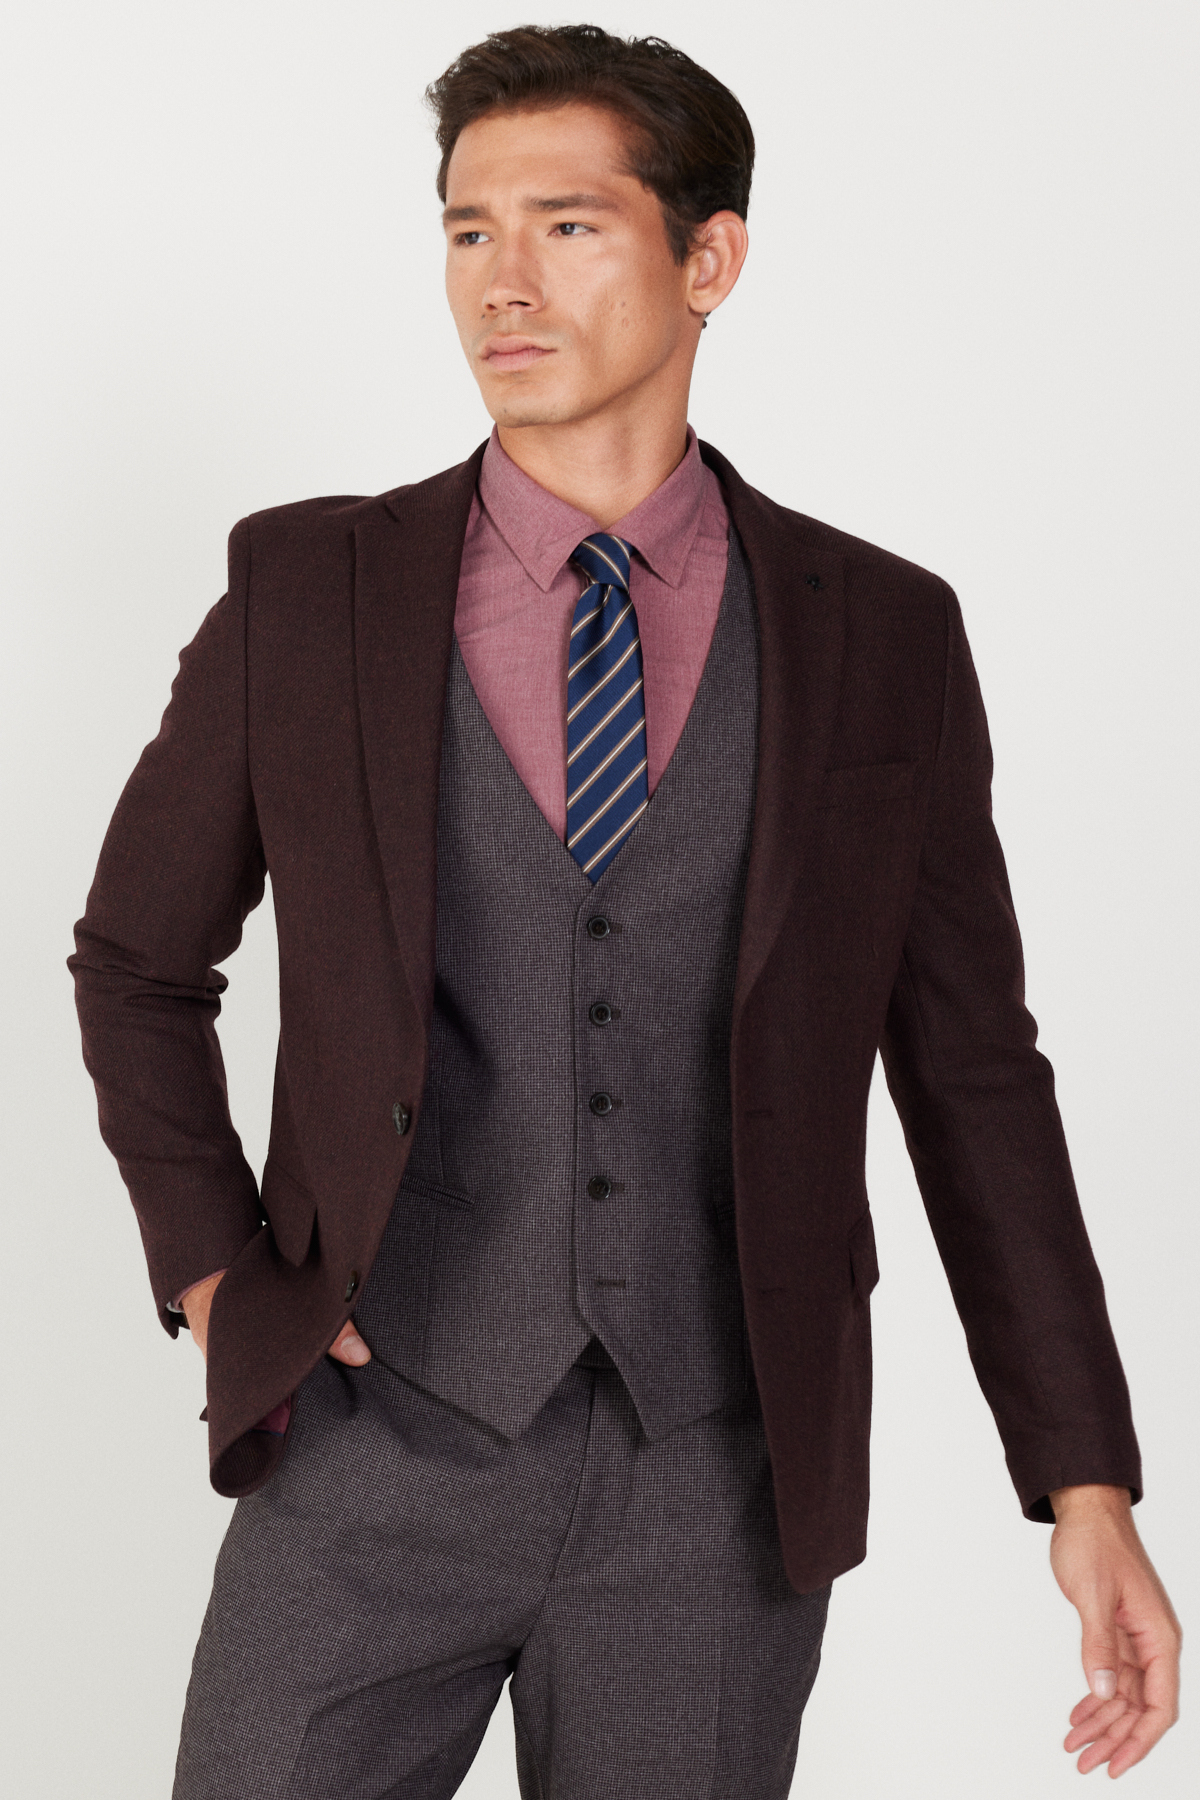 ALTINYILDIZ CLASSICS Men's Burgundy-Grey Slim Fit Slim Fit Mono Collar Patterned Vest Suit